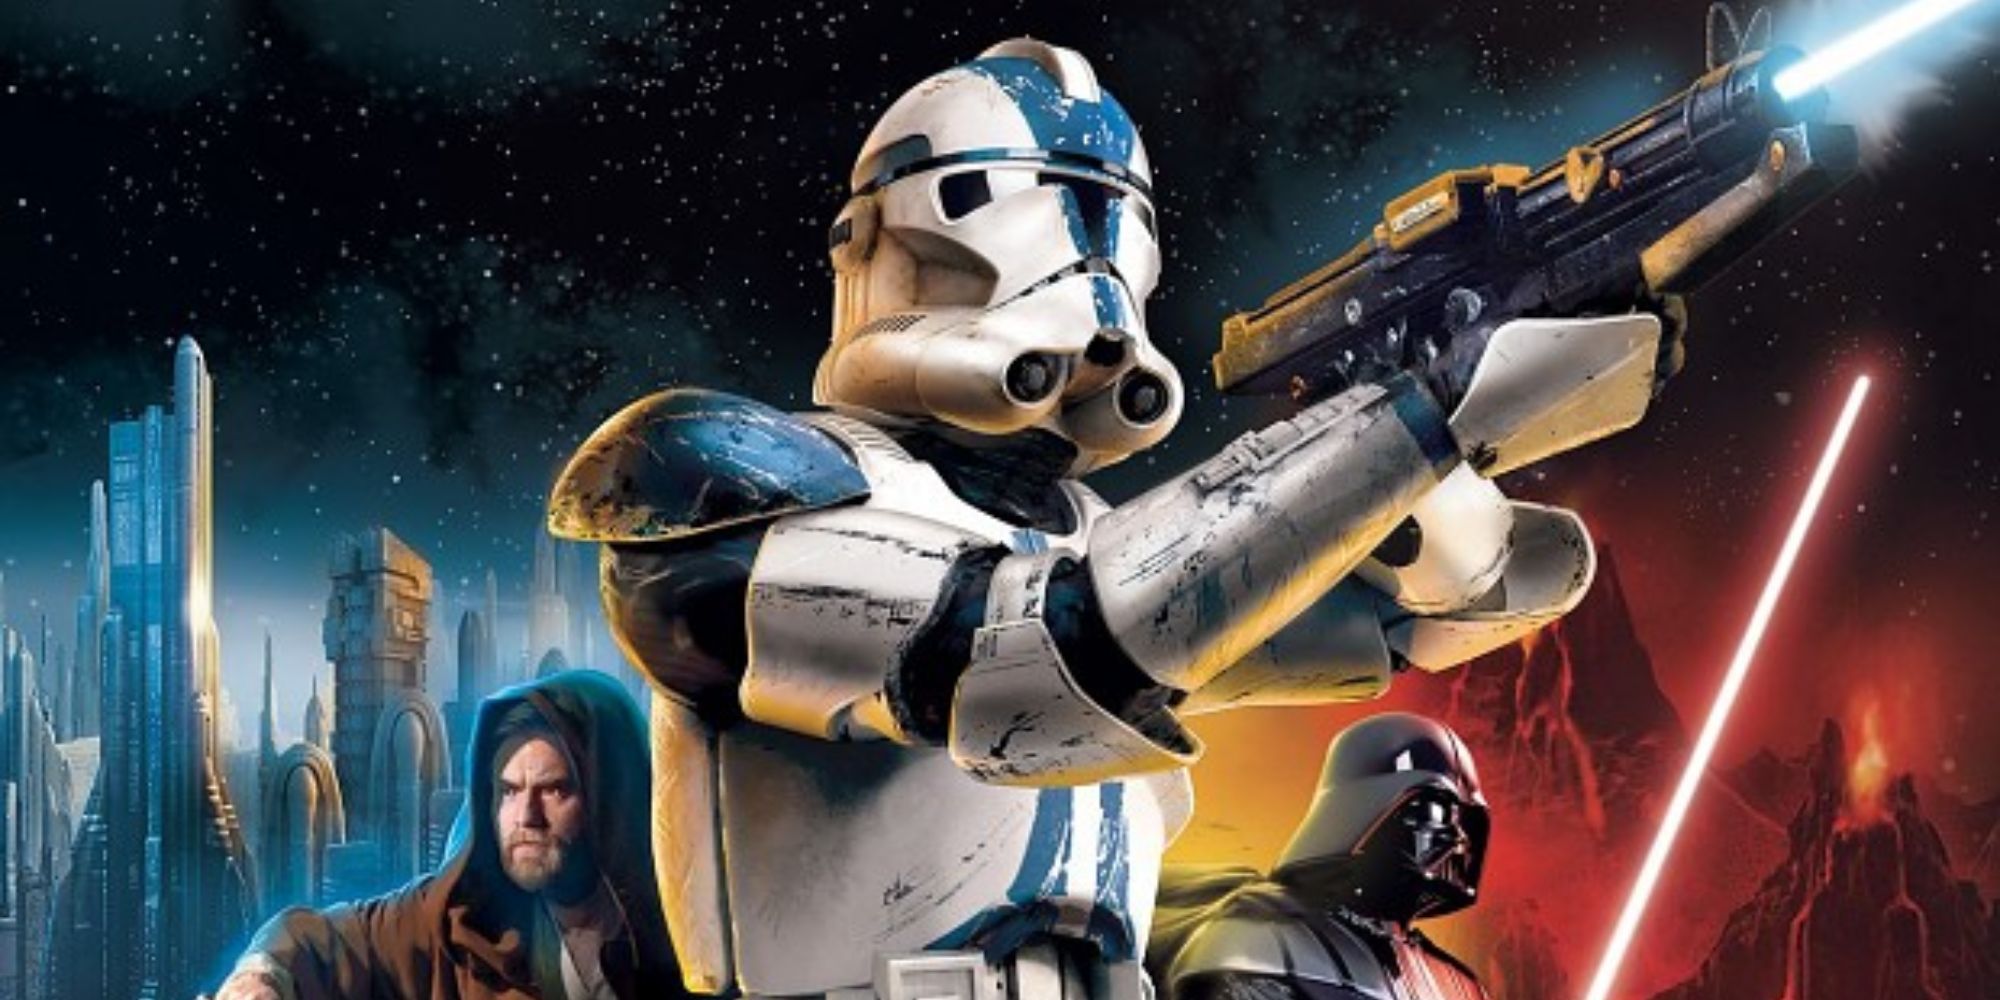 Star Wars Battlefront 2 cover art.